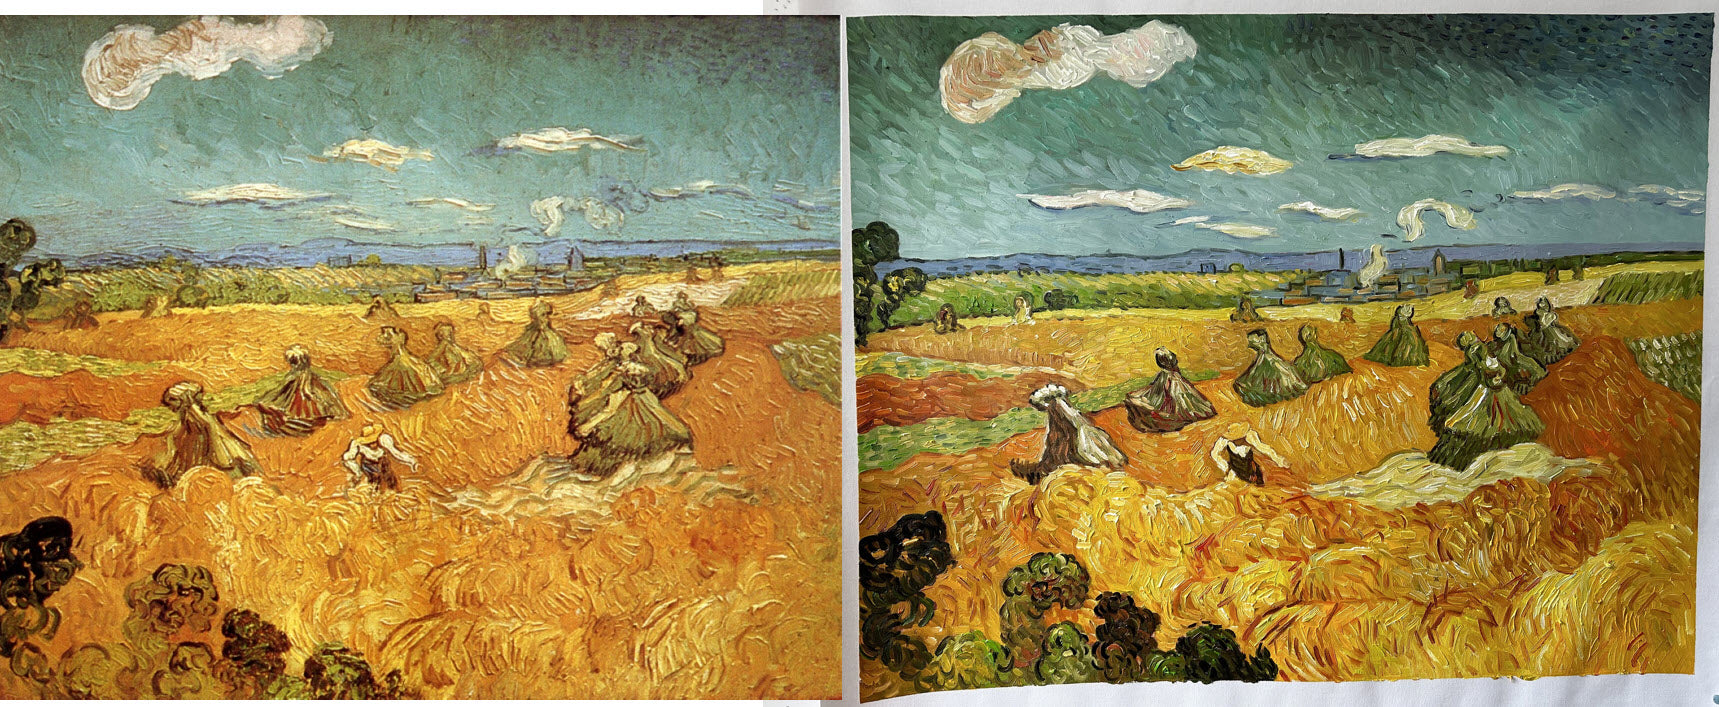 Pilhas de trigo com ceifeira - Van Gogh